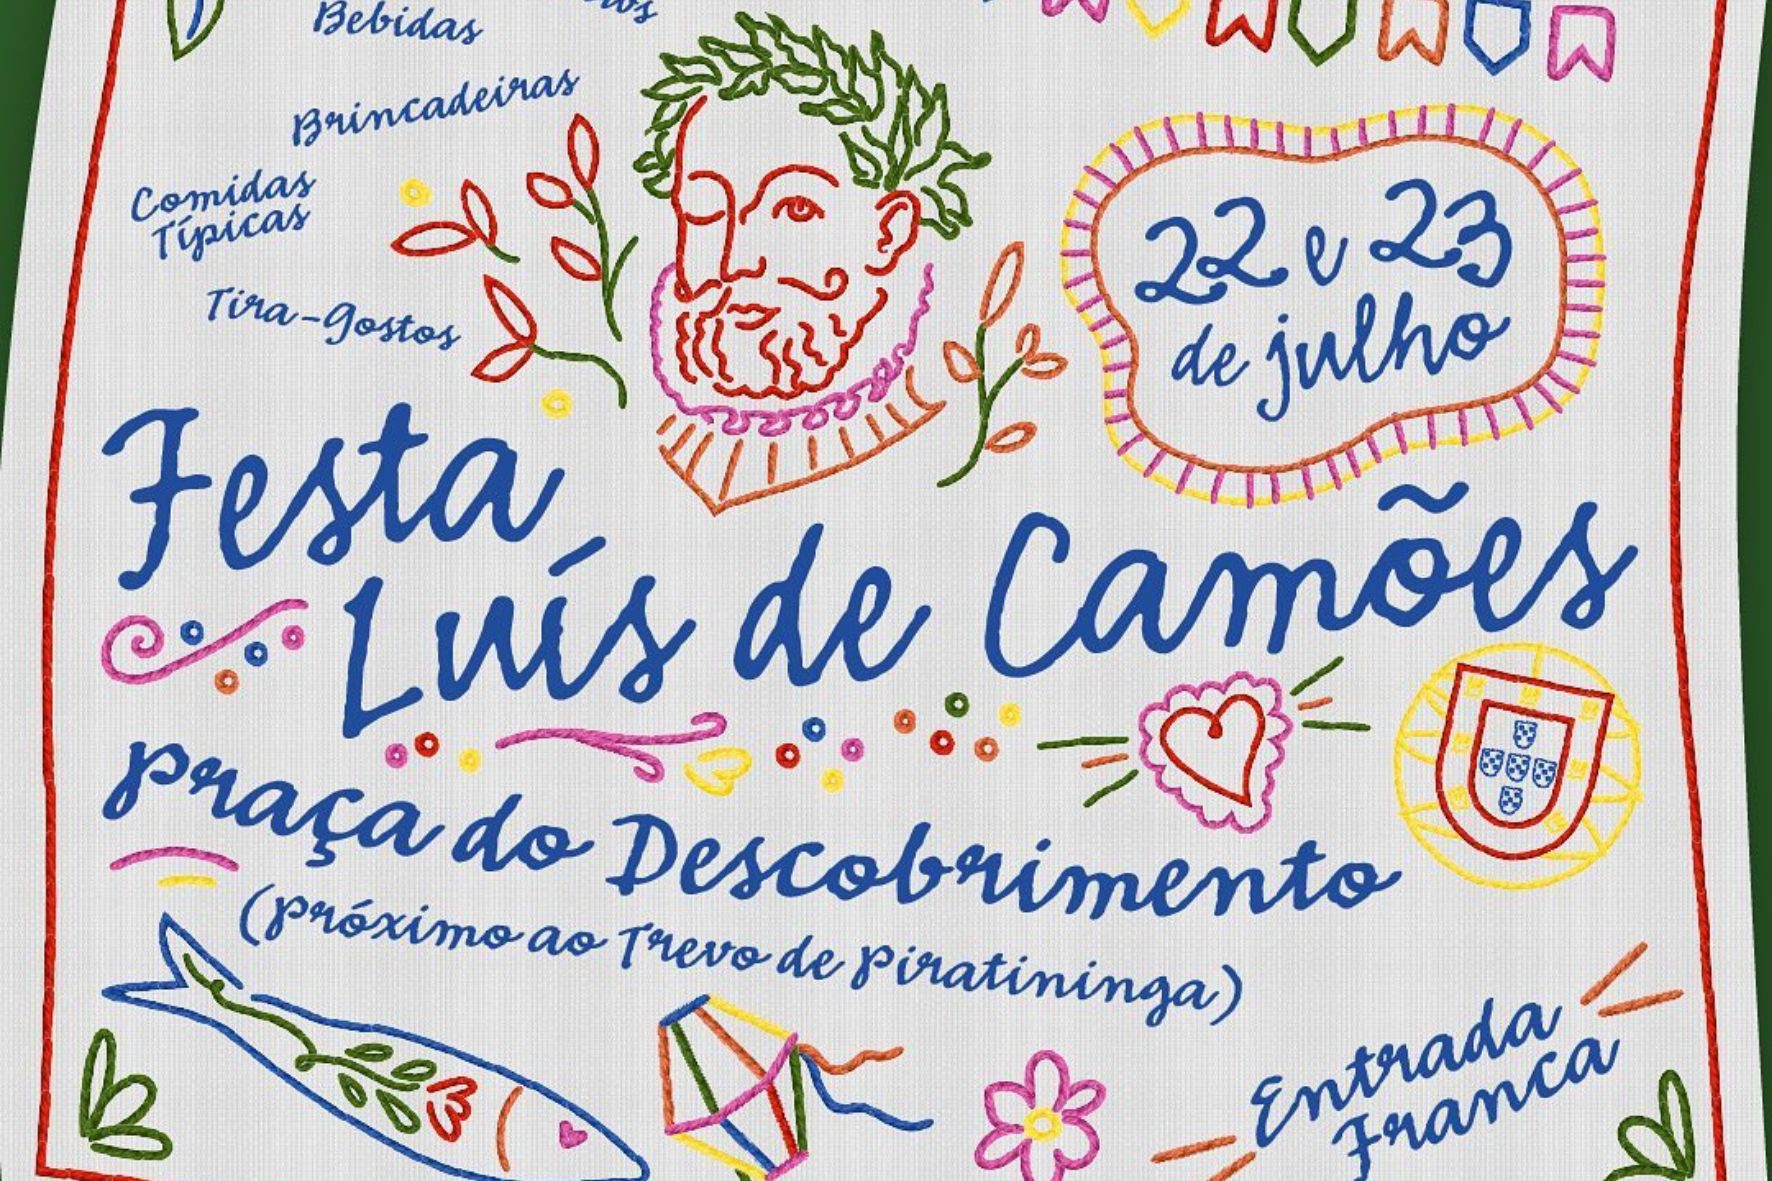 Niterói terá Festa Luís de Camões neste final de semana, em Piratininga